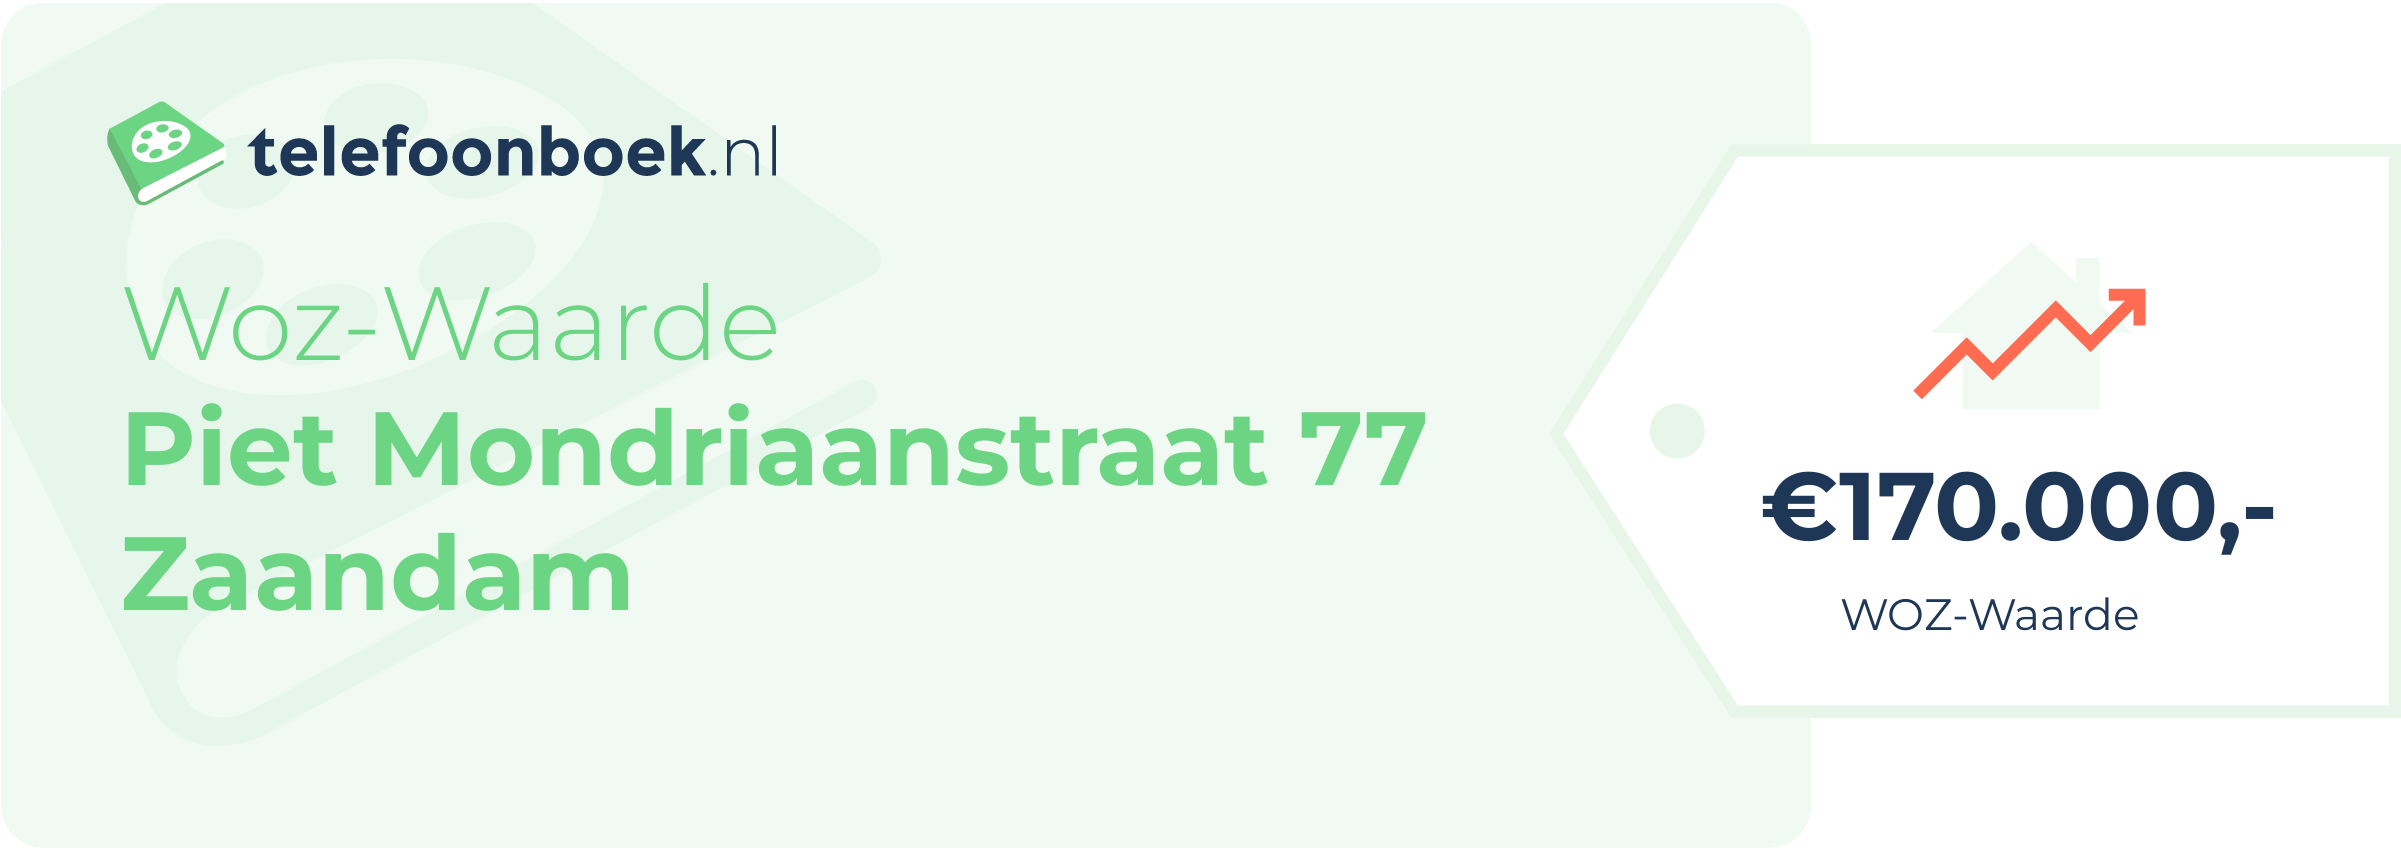 WOZ-waarde Piet Mondriaanstraat 77 Zaandam